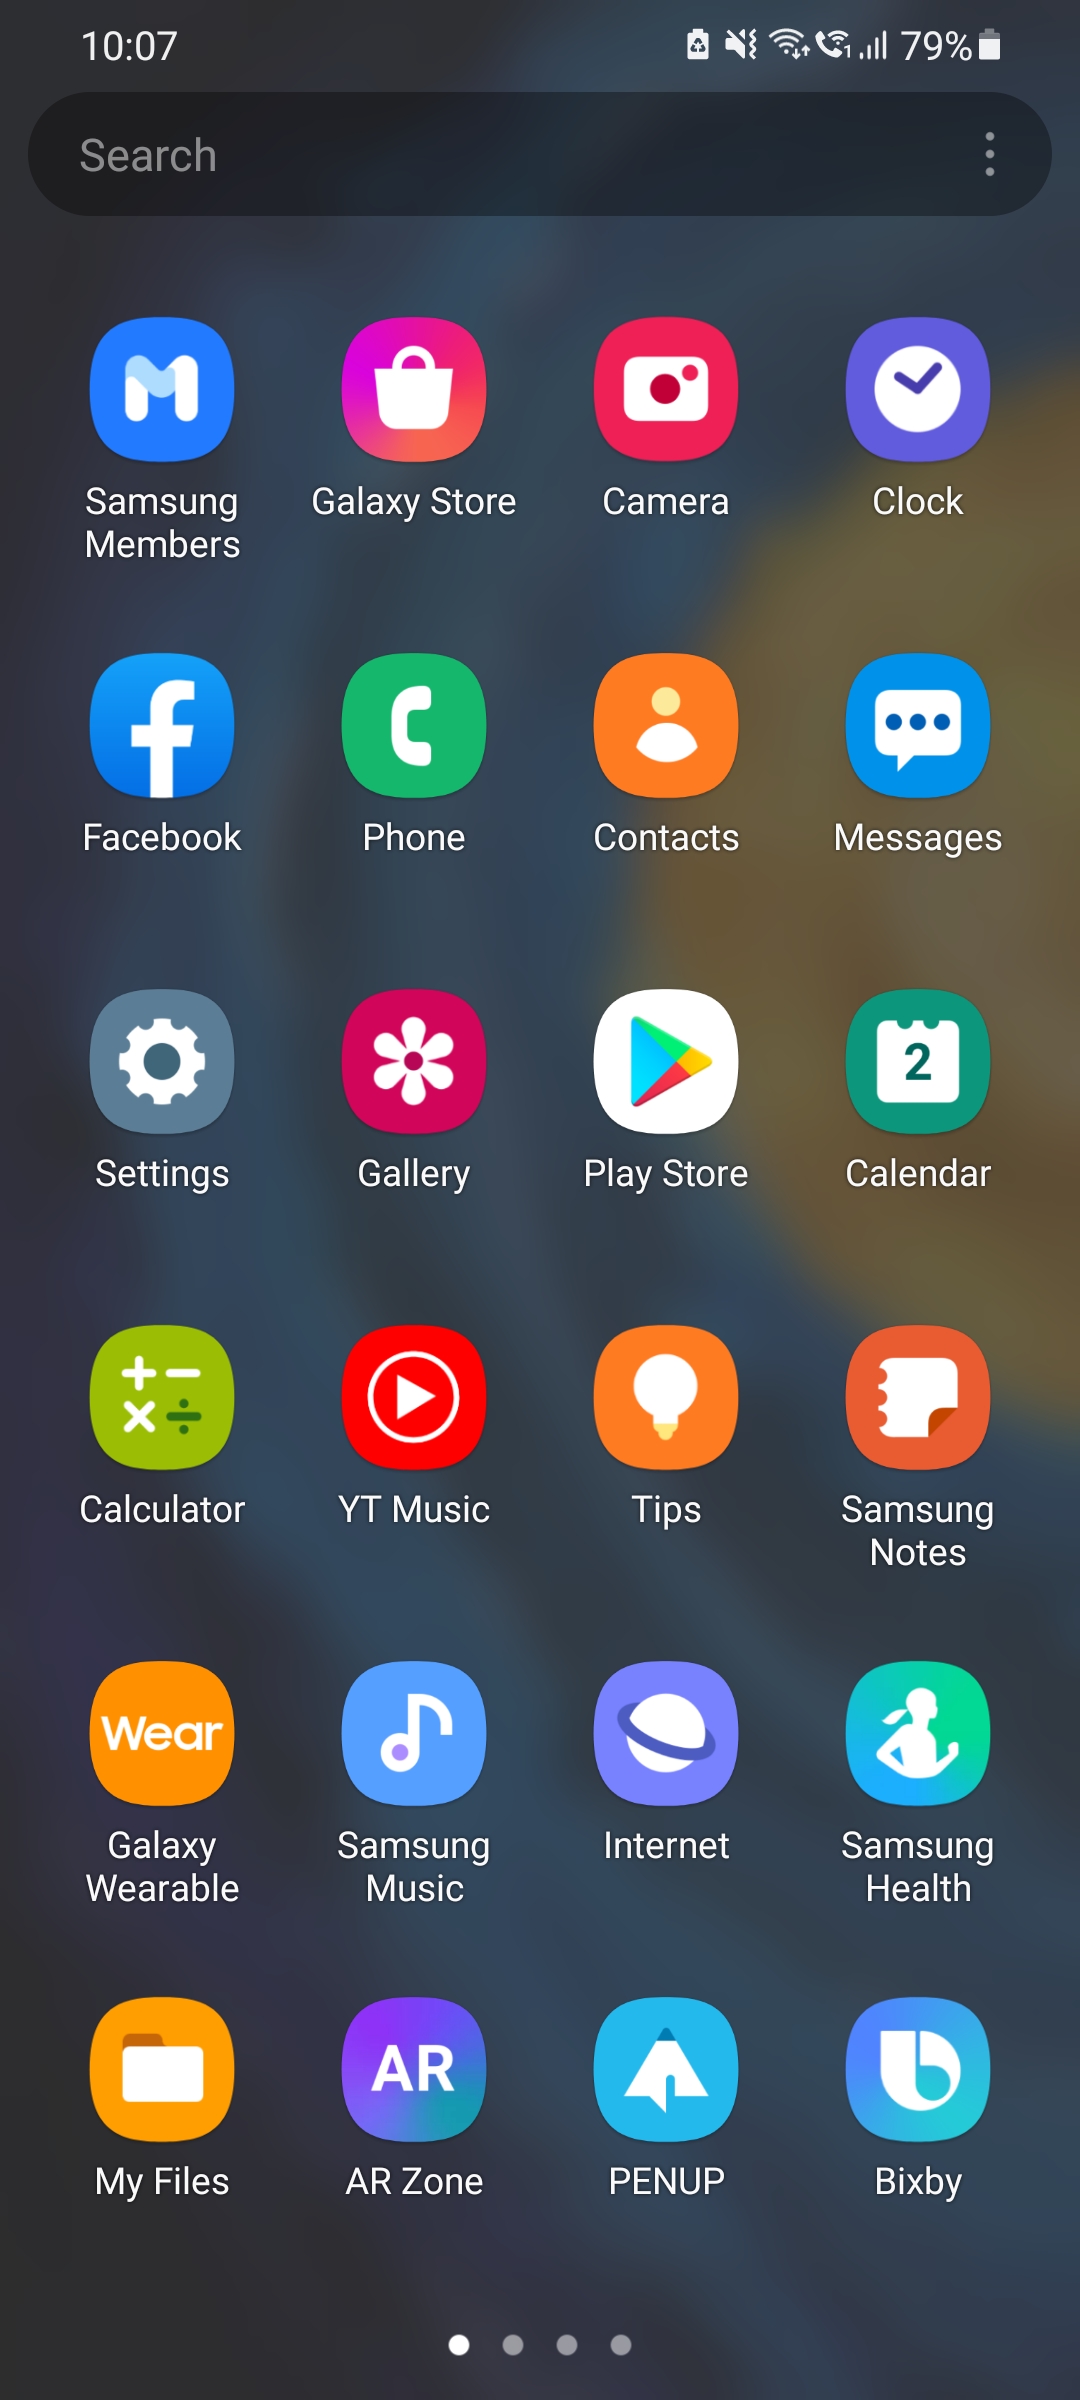 Khám phá hình nền ngăn kéo ứng dụng tuyệt đẹp của cộng đồng Samsung và làm cho điện thoại của bạn trở nên độc đáo. Những hình ảnh này sẽ mang lại cho bạn niềm vui với mỗi lần mở khóa điện thoại. Hãy truy cập để thưởng thức và trải nghiệm những bức hình đẹp này nào! 